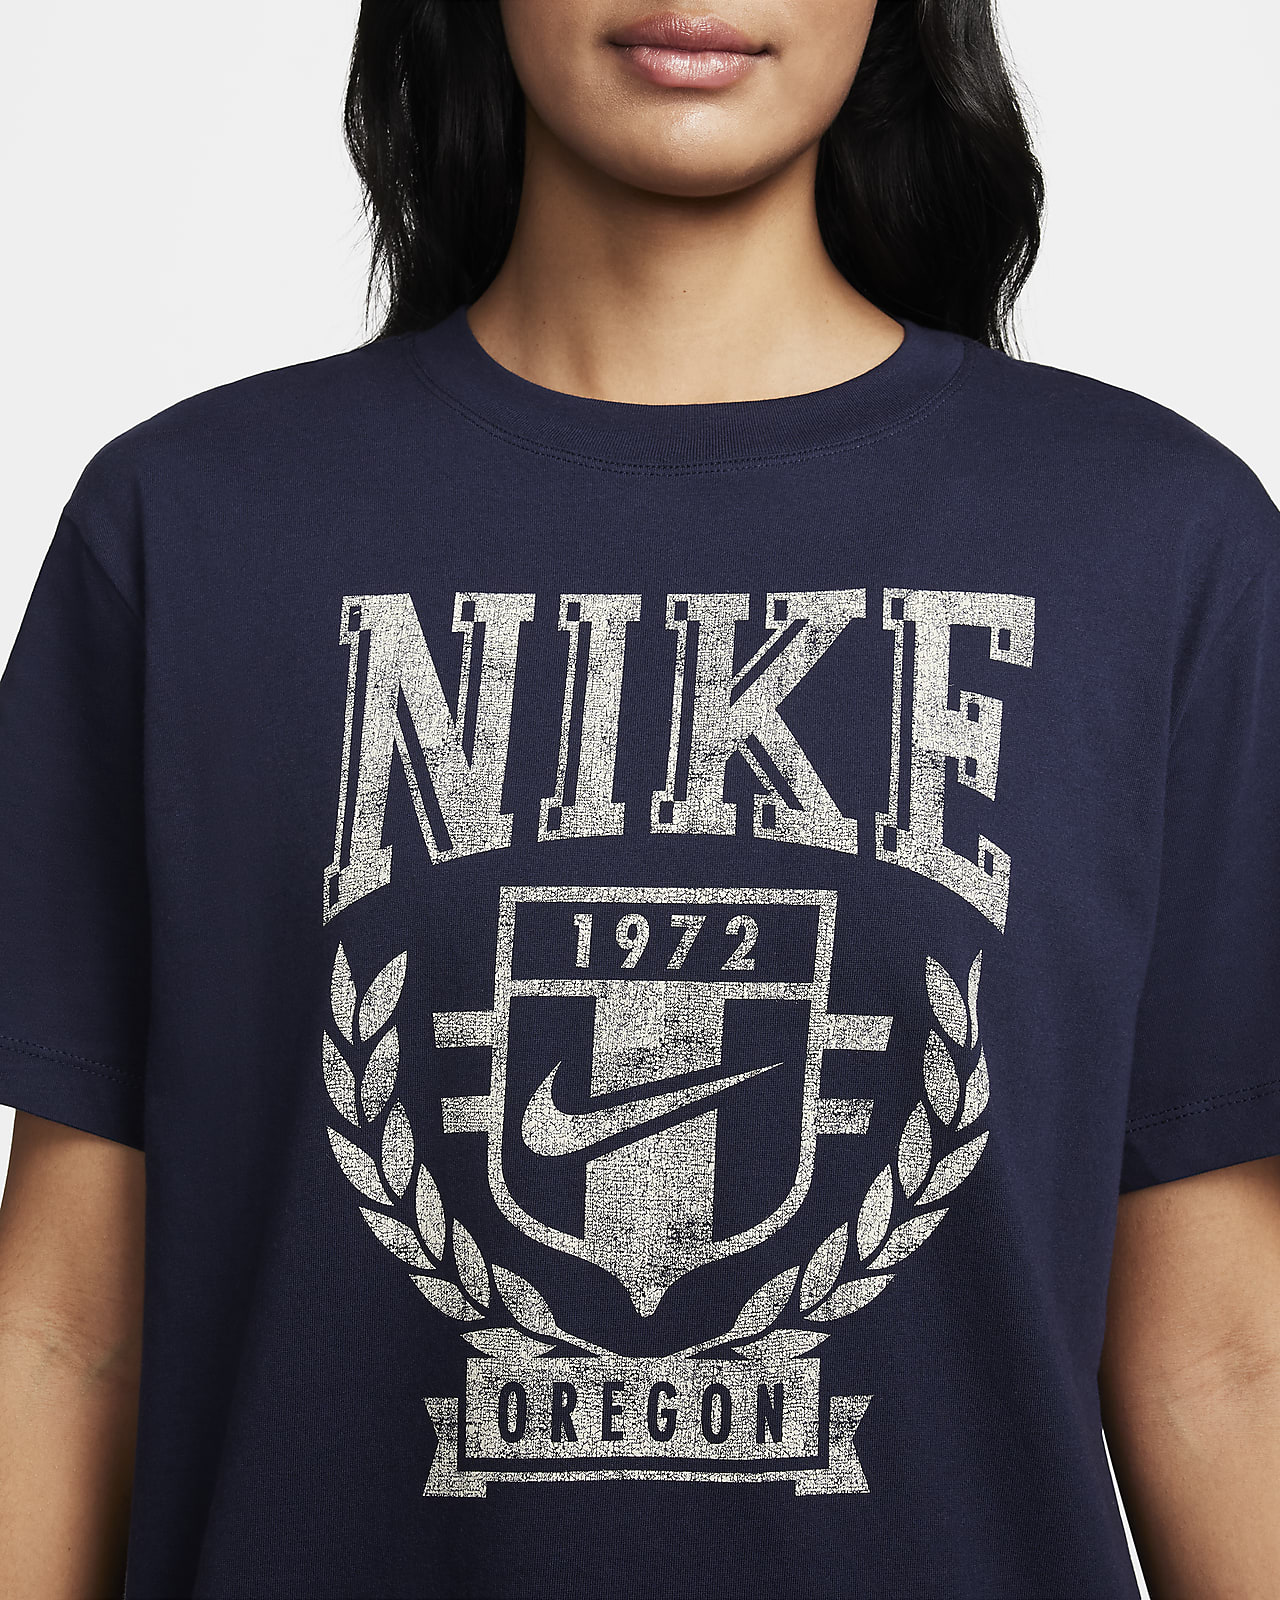 shirt with logo - StclaircomoShops, Nike Sportswear CZ8528-063